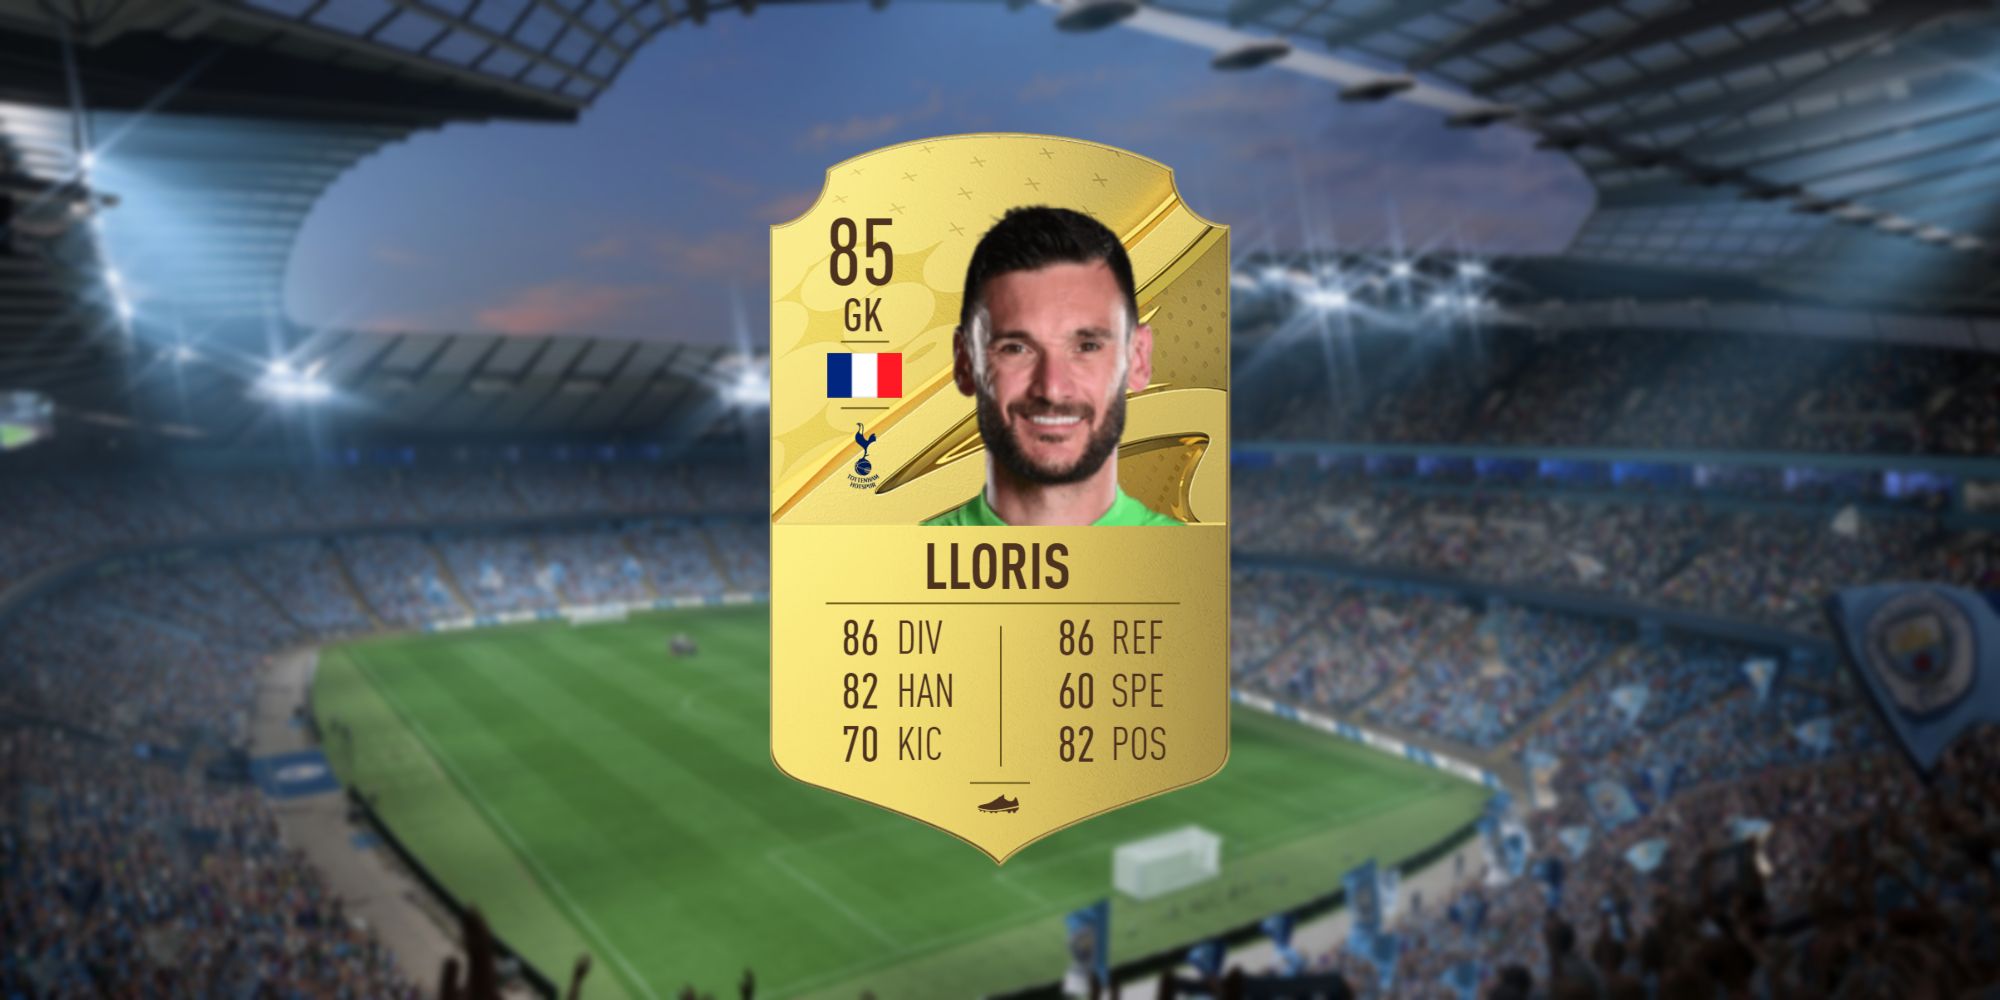 An image of Hugo Lloris's FIFA 23 Card